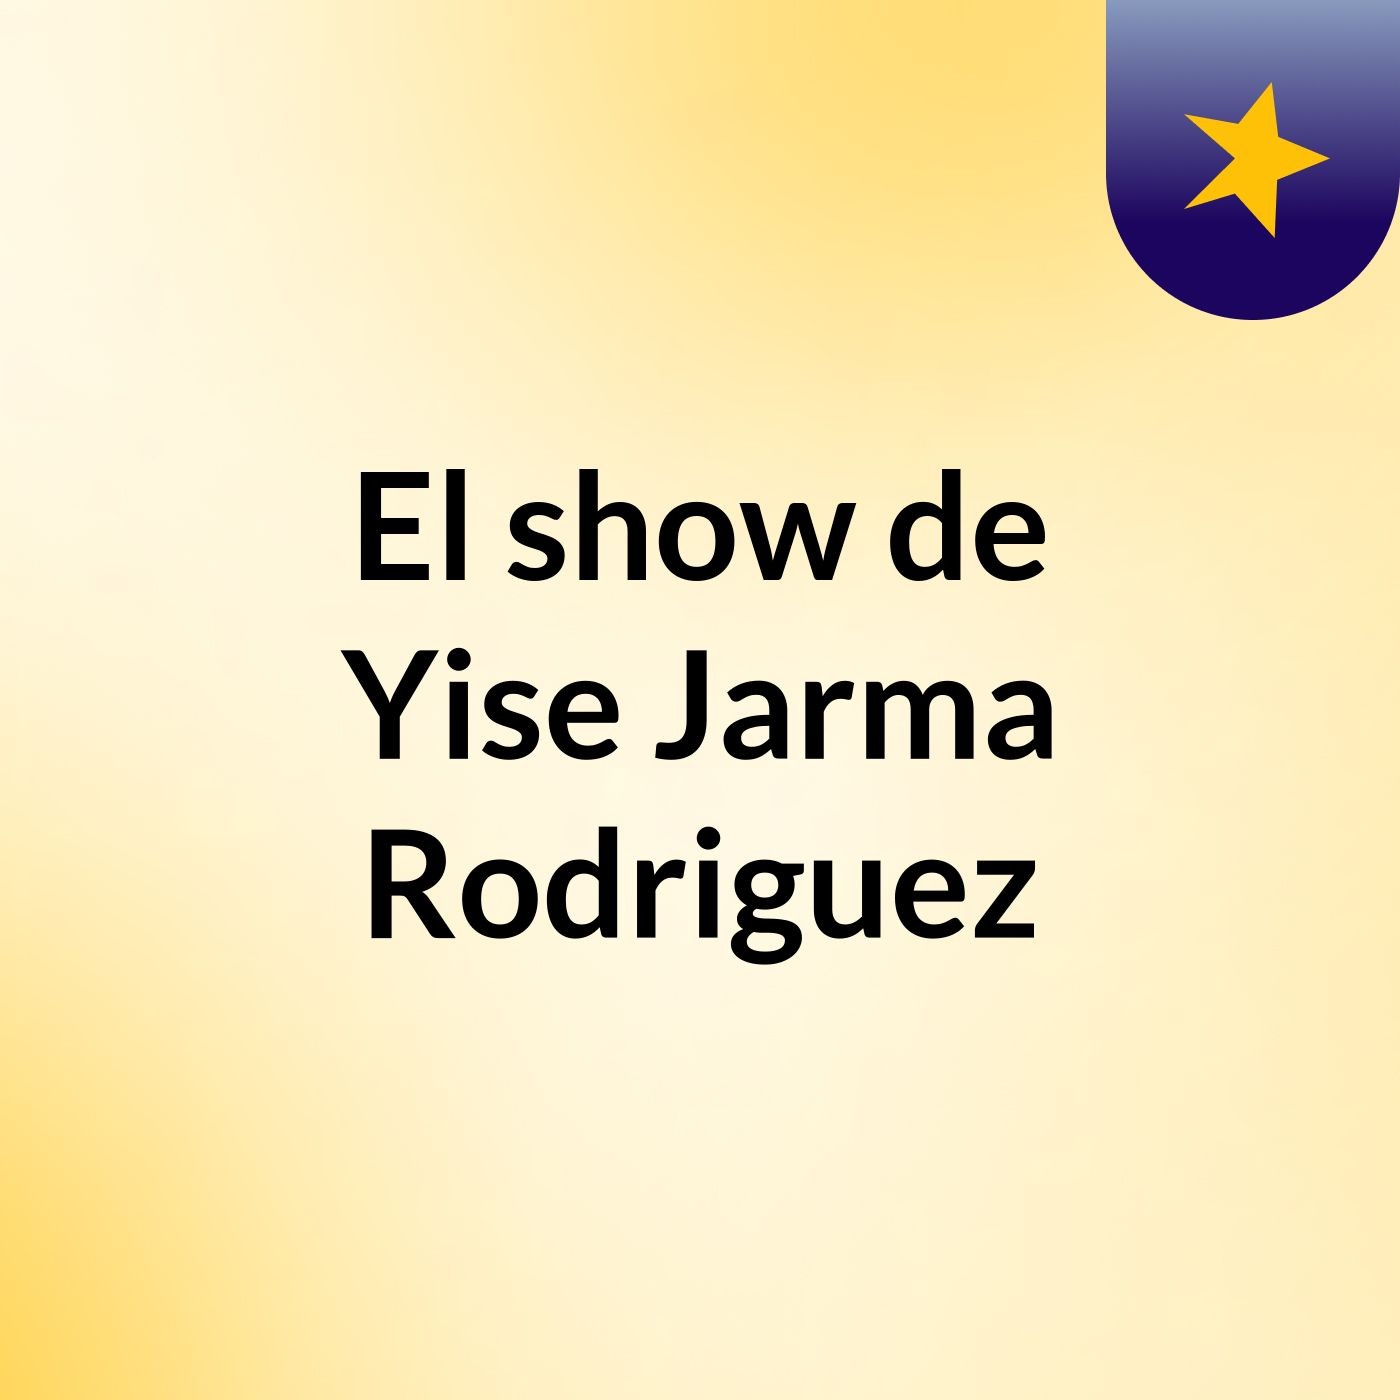 El show de Yise Jarma Rodriguez